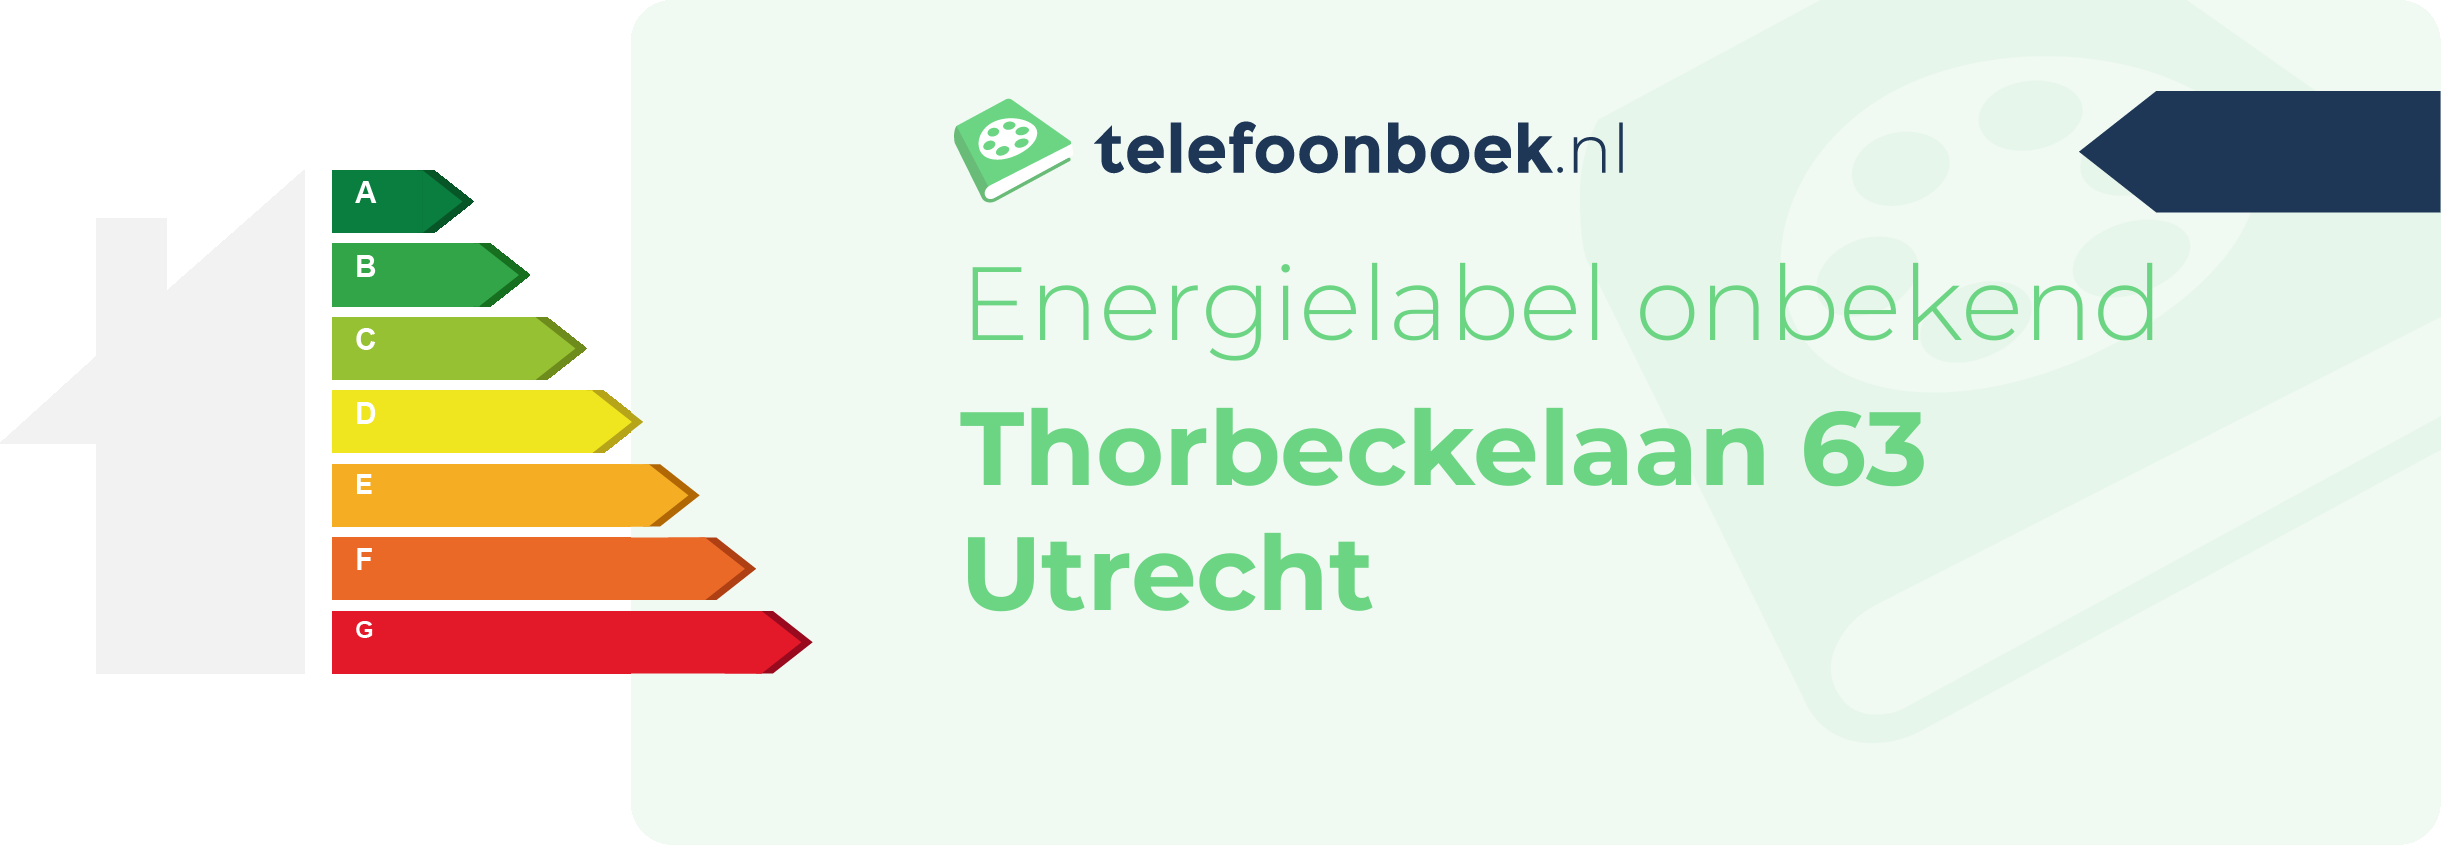 Energielabel Thorbeckelaan 63 Utrecht